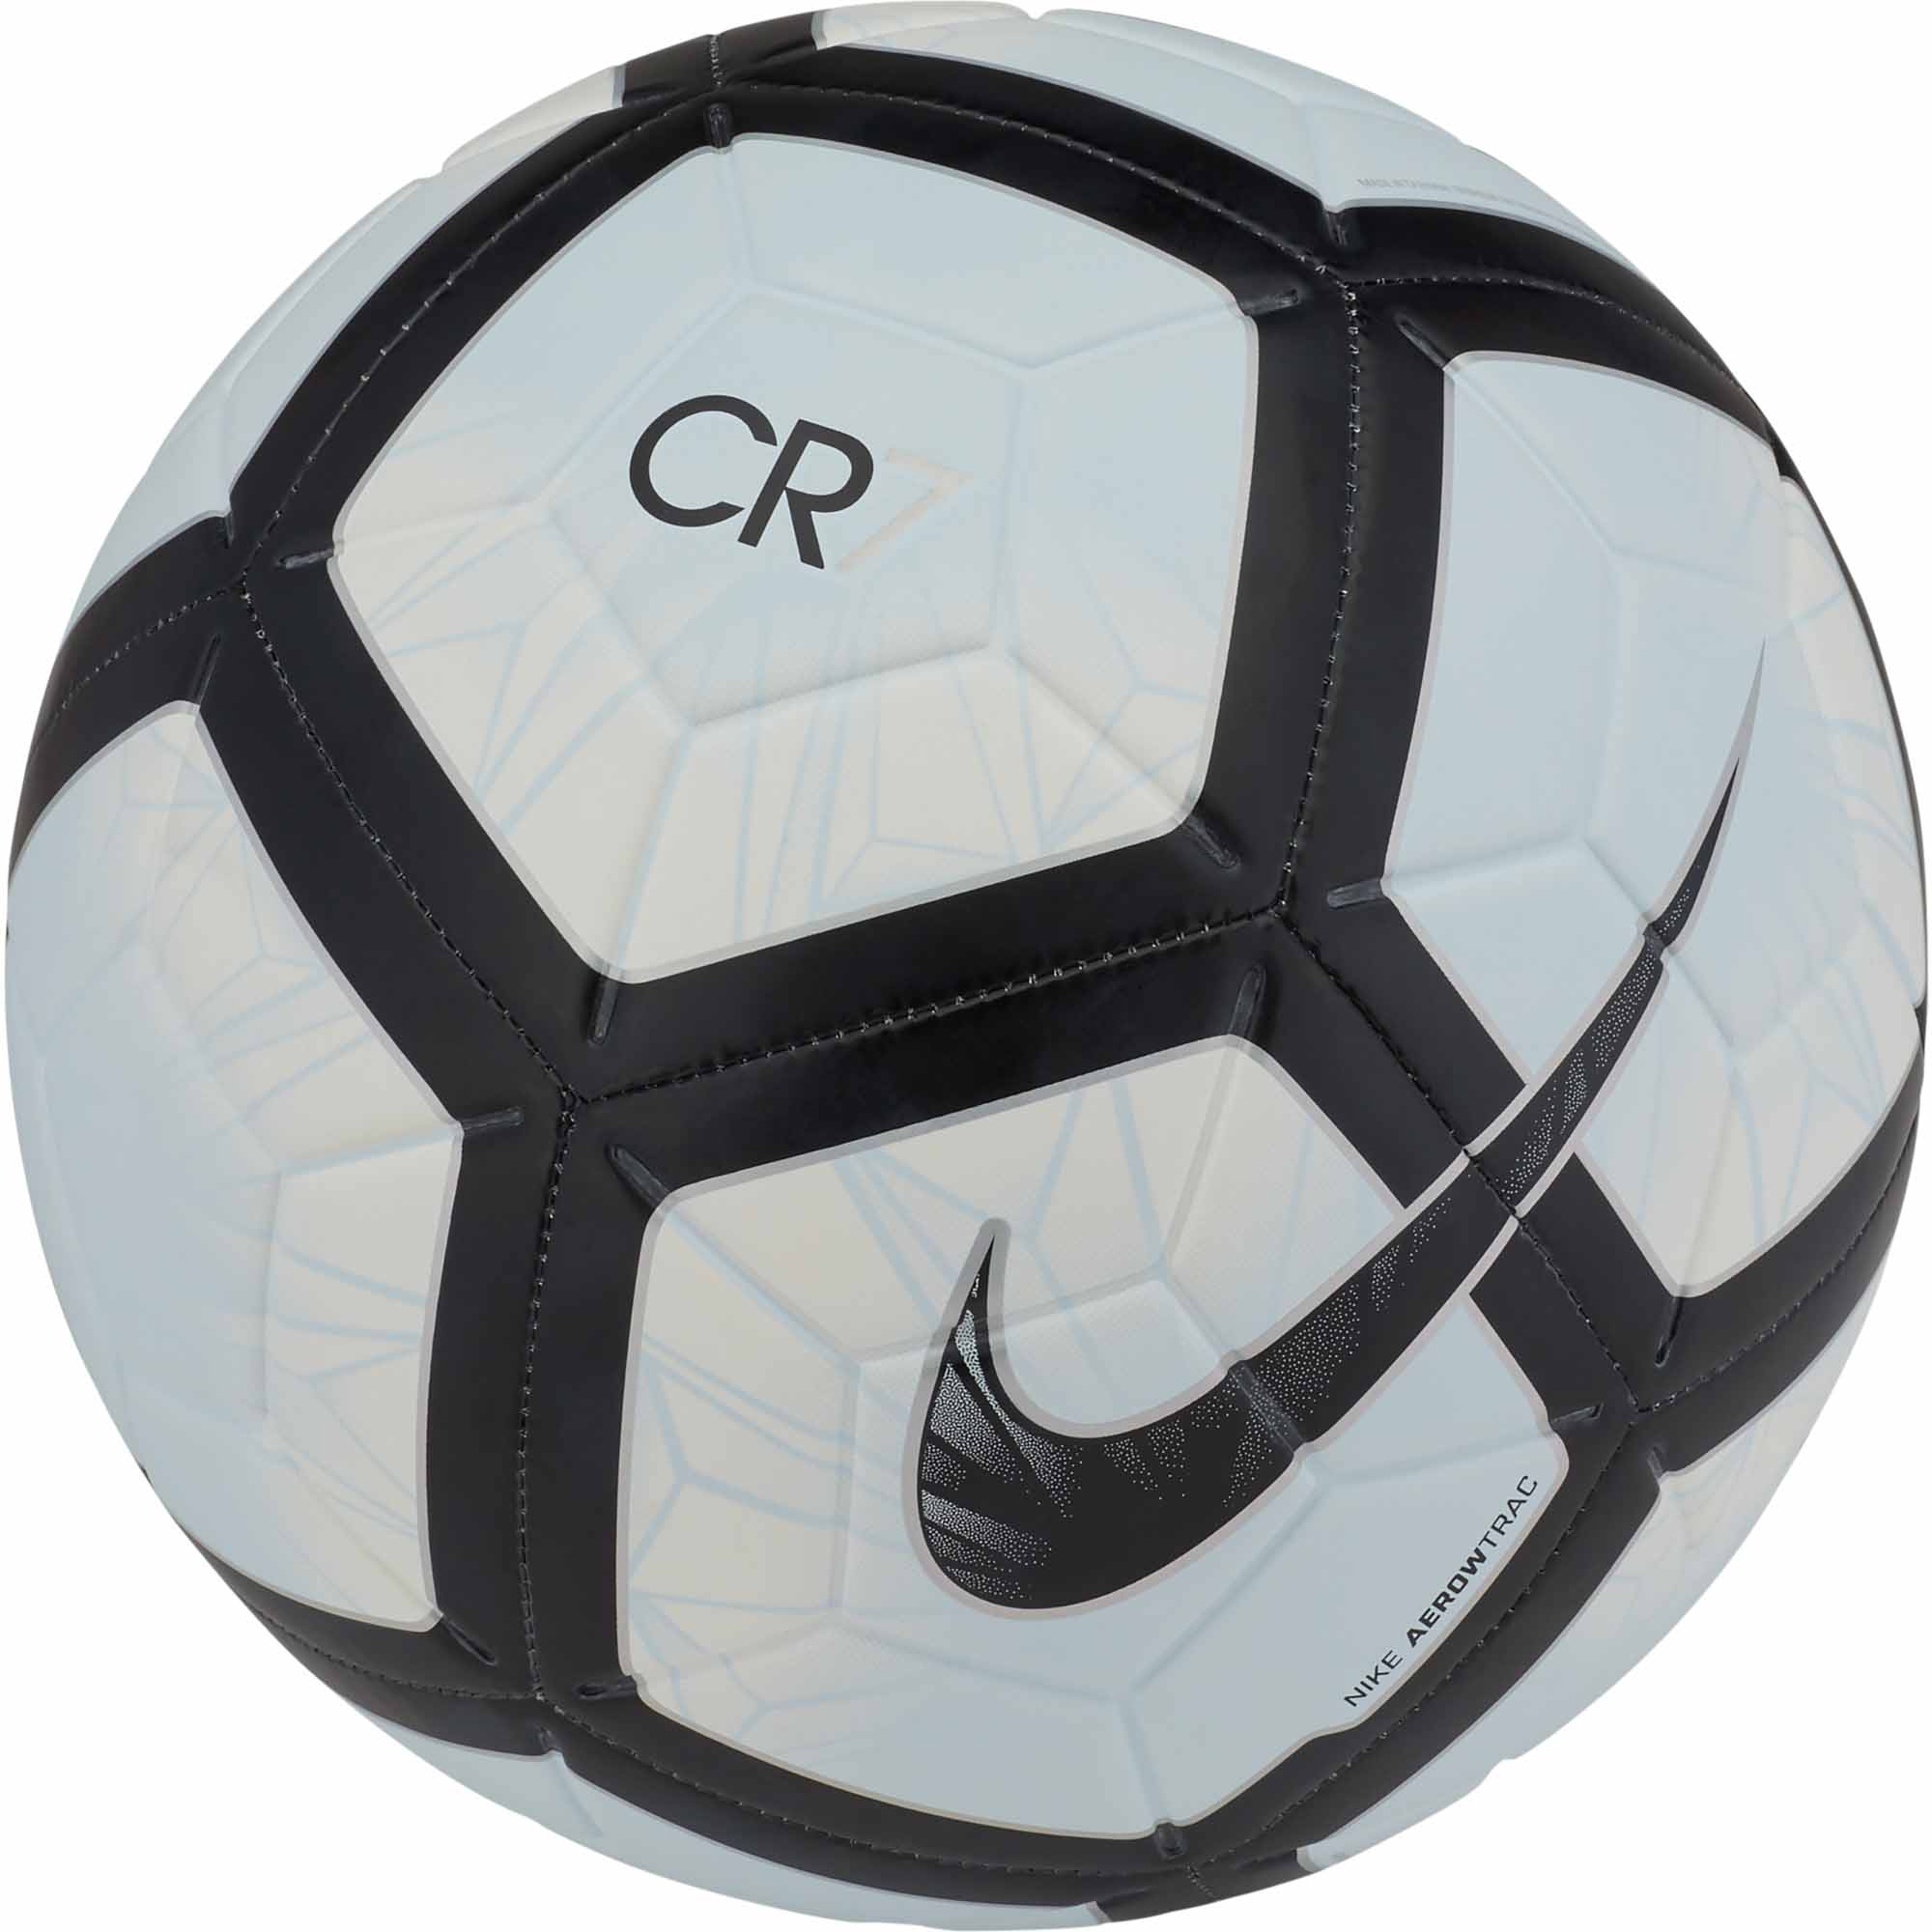 Nike CR7 Prestige Soccer Ball - White 